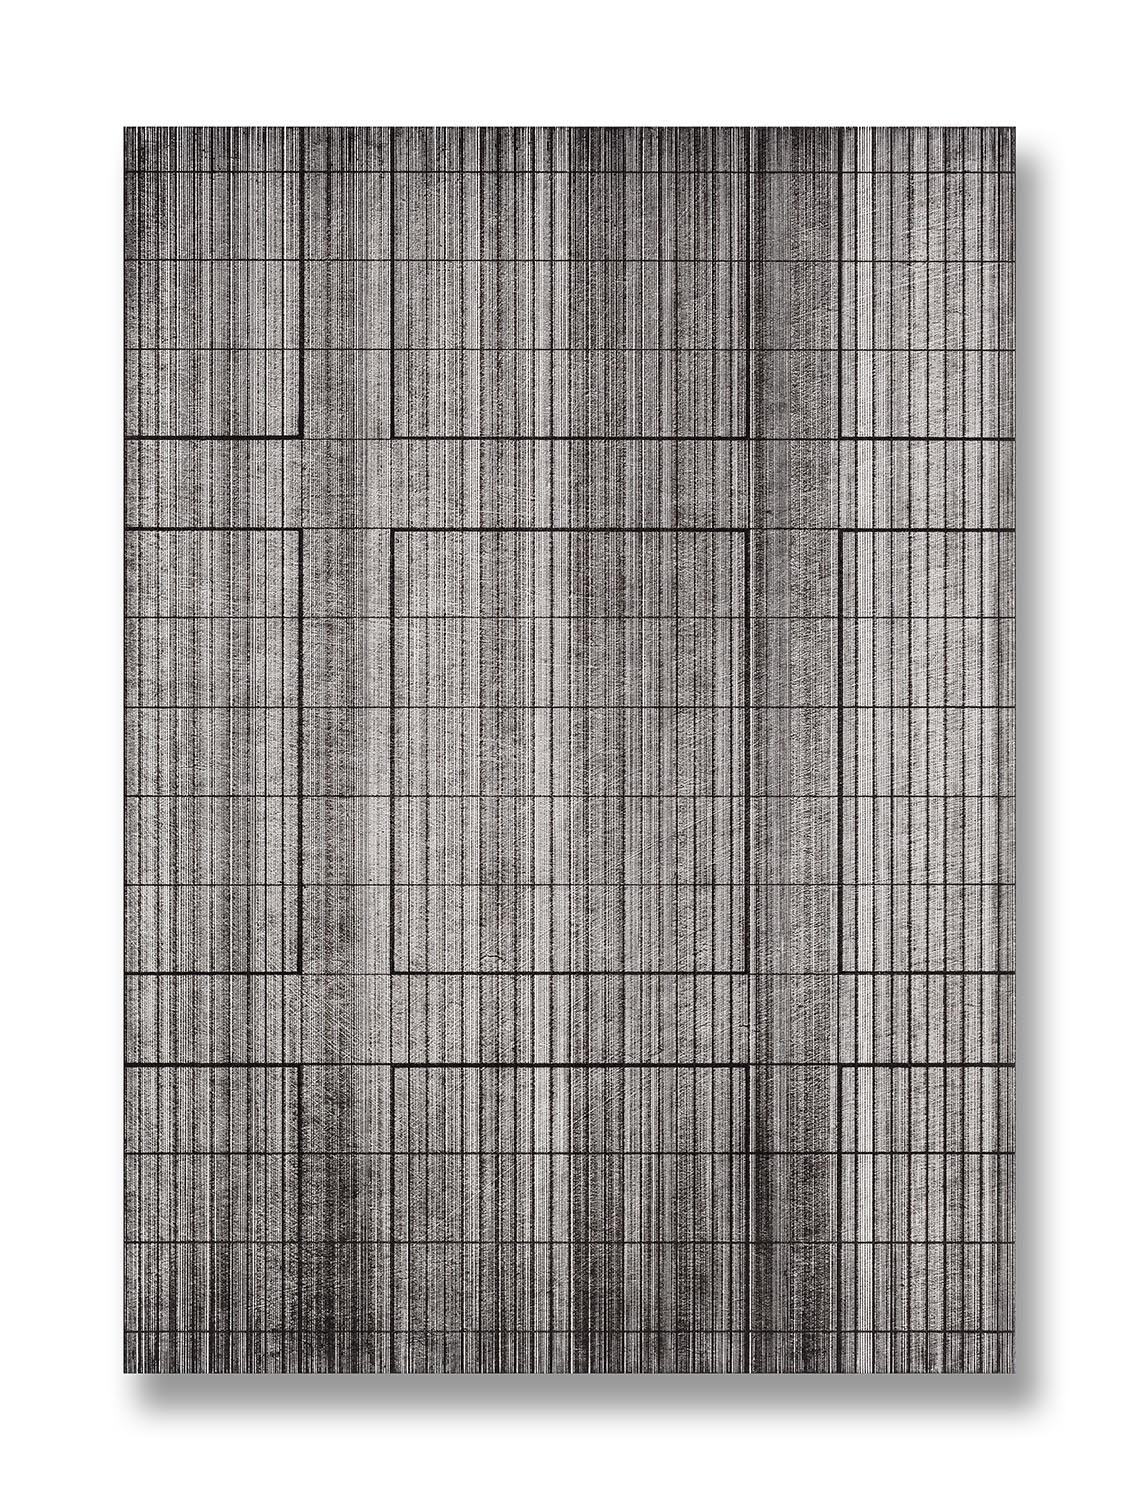 20.EunHyeKang_Meditation-No.20_Sumi-ink-drawing-on-Rice-Paper_70x50(cm)_2016.jpg